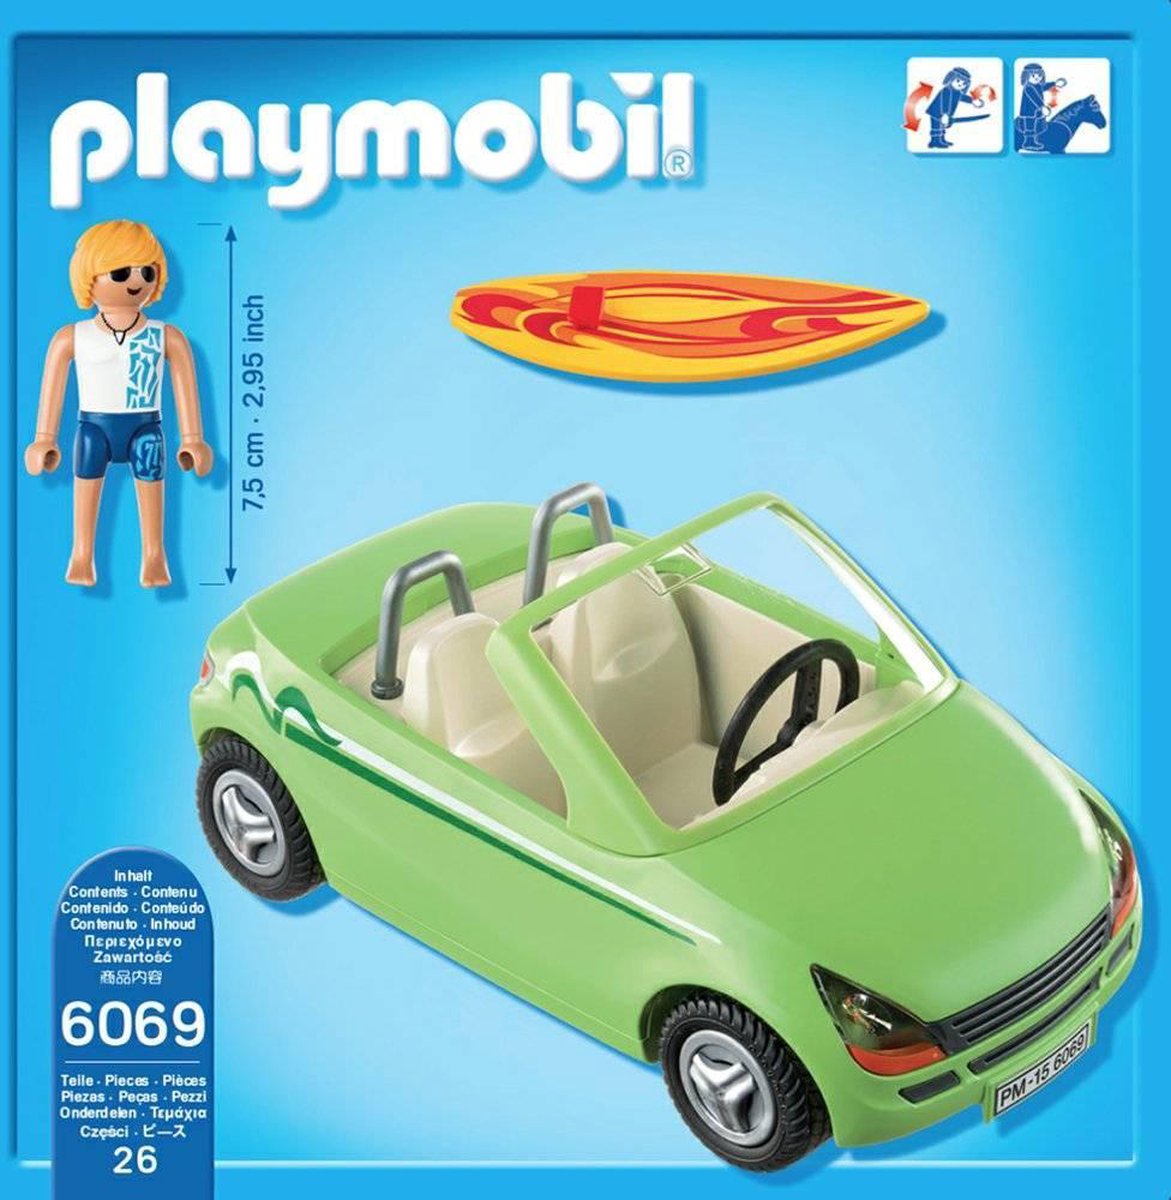 PLAYMOBIL Cabrio met surfer - 6069 | bol.com